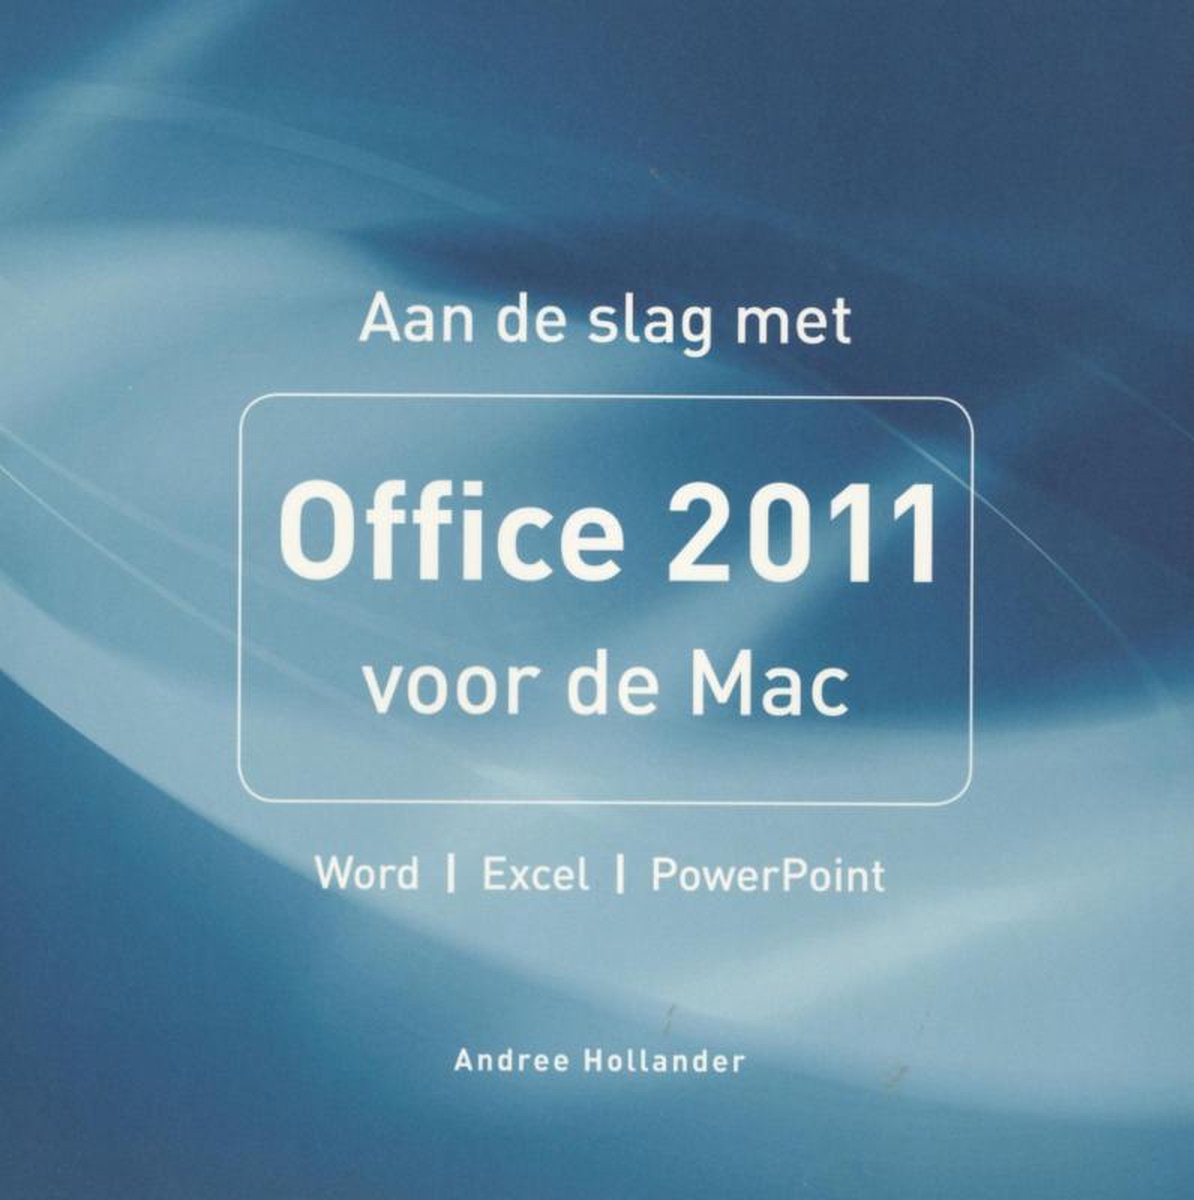 Mac - Aan de slag met Office 2011 voor de Mac